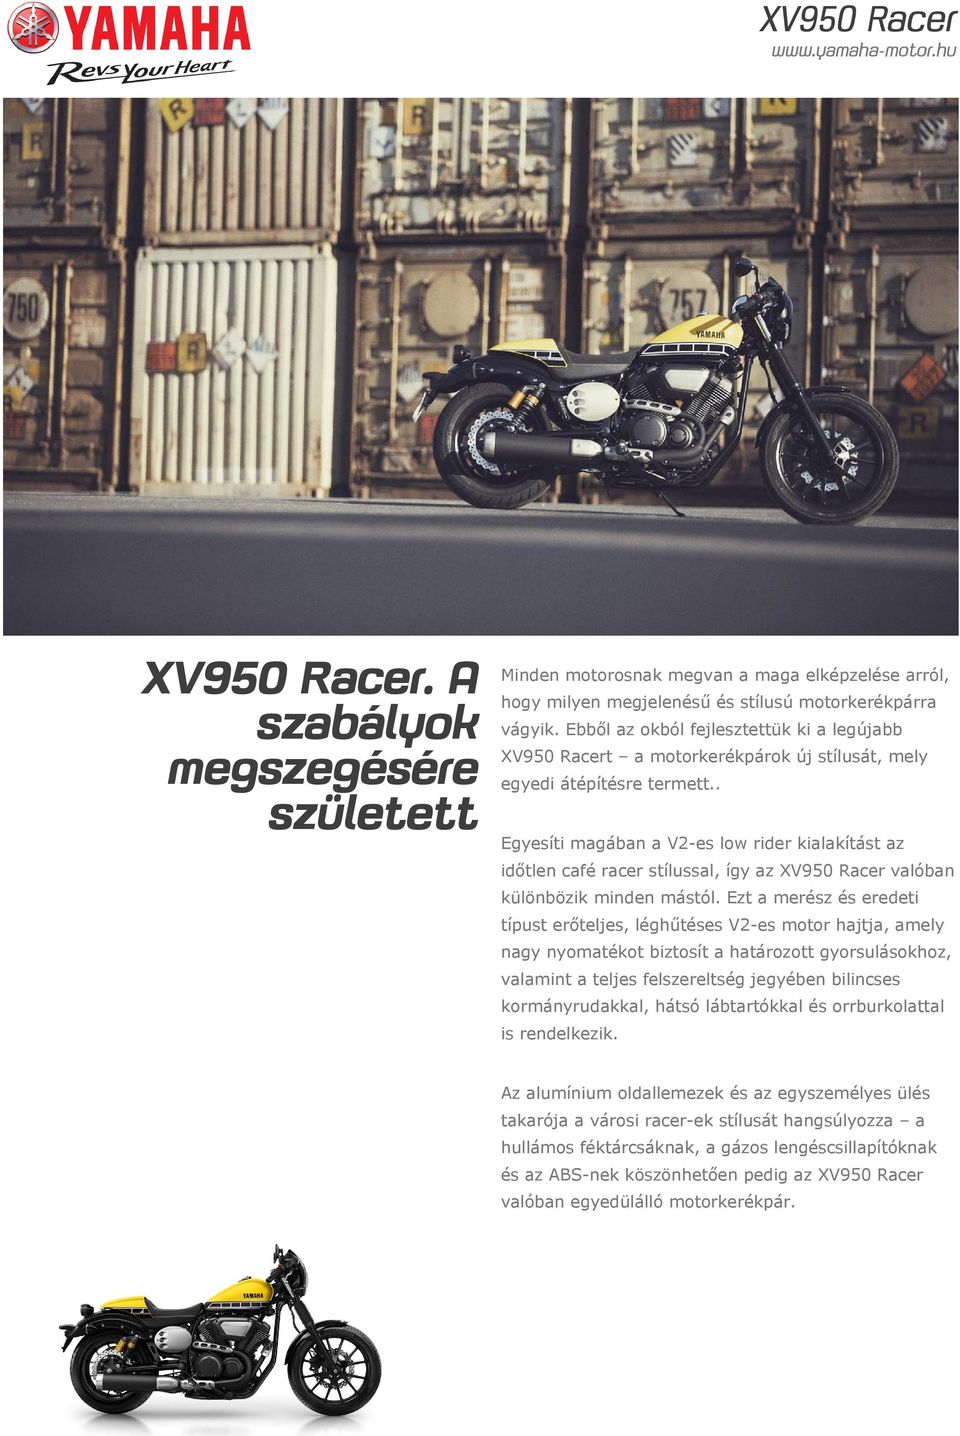 . Egyesíti magában a V2-es low rider kialakítást az időtlen café racer stílussal, így az XV950 Racer valóban különbözik minden mástól.